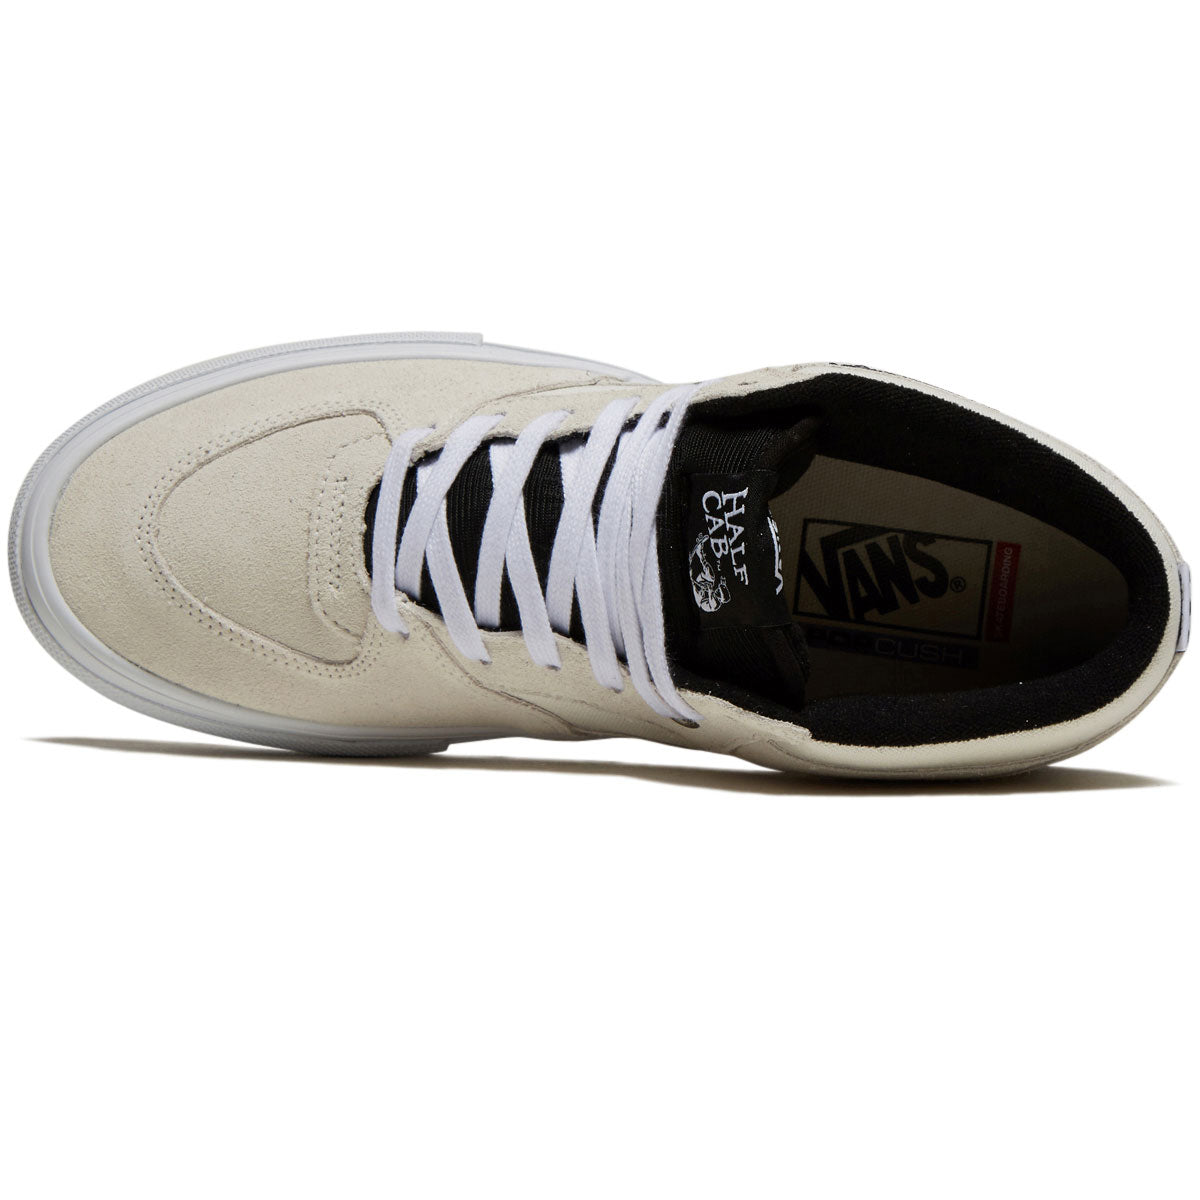 Vans Skate Half Cab Shoes - Blanc De Blanc image 3